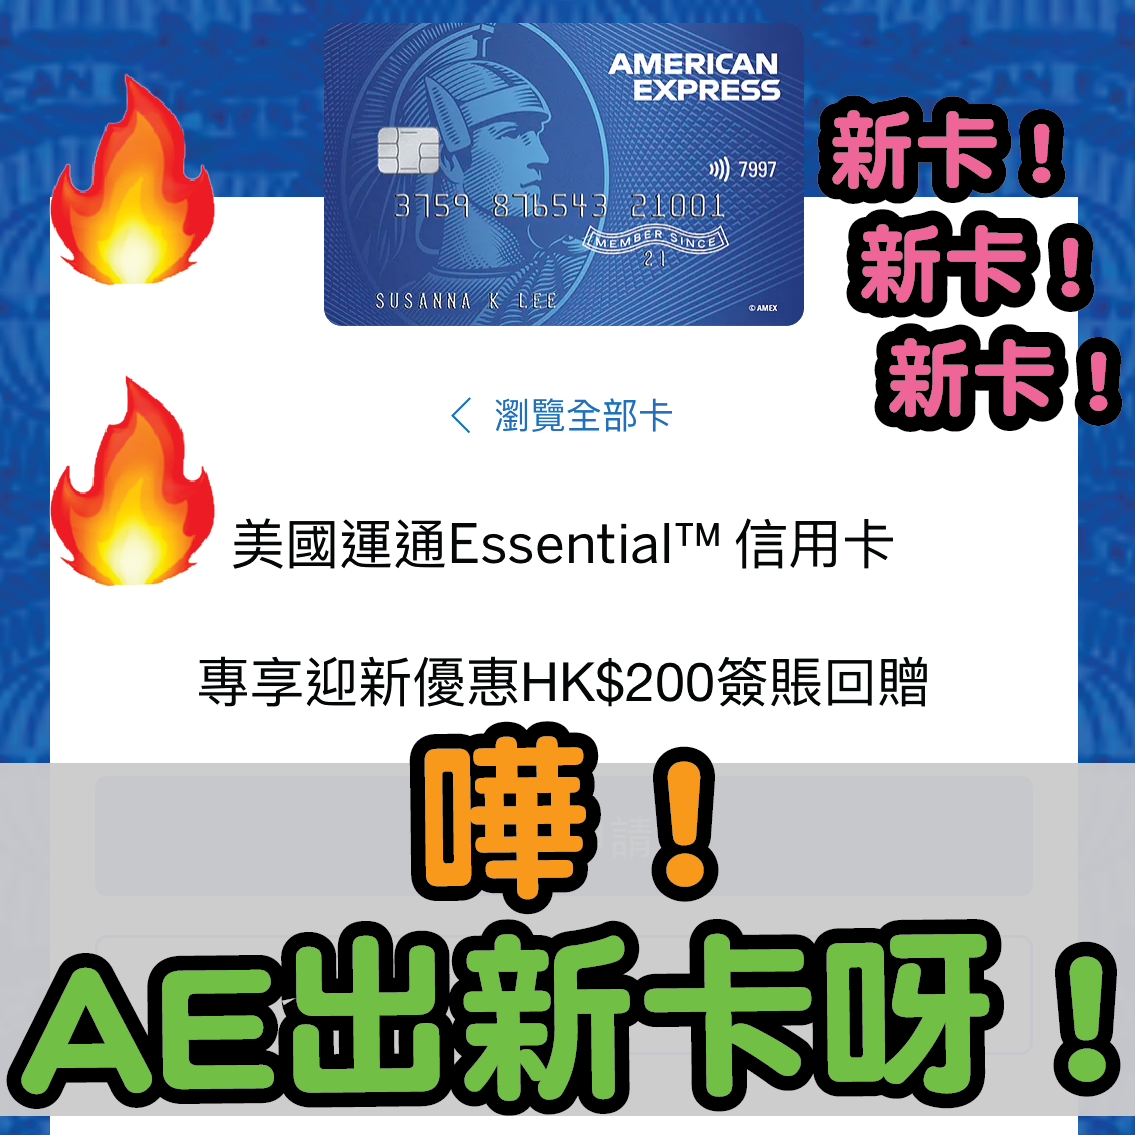 【❗❗嘩！AE出新卡？】美國運通Essential信用卡！迎新只係得HK$200簽賬回贈！本地簽賬2.5倍積分！外幣簽賬3倍積分！